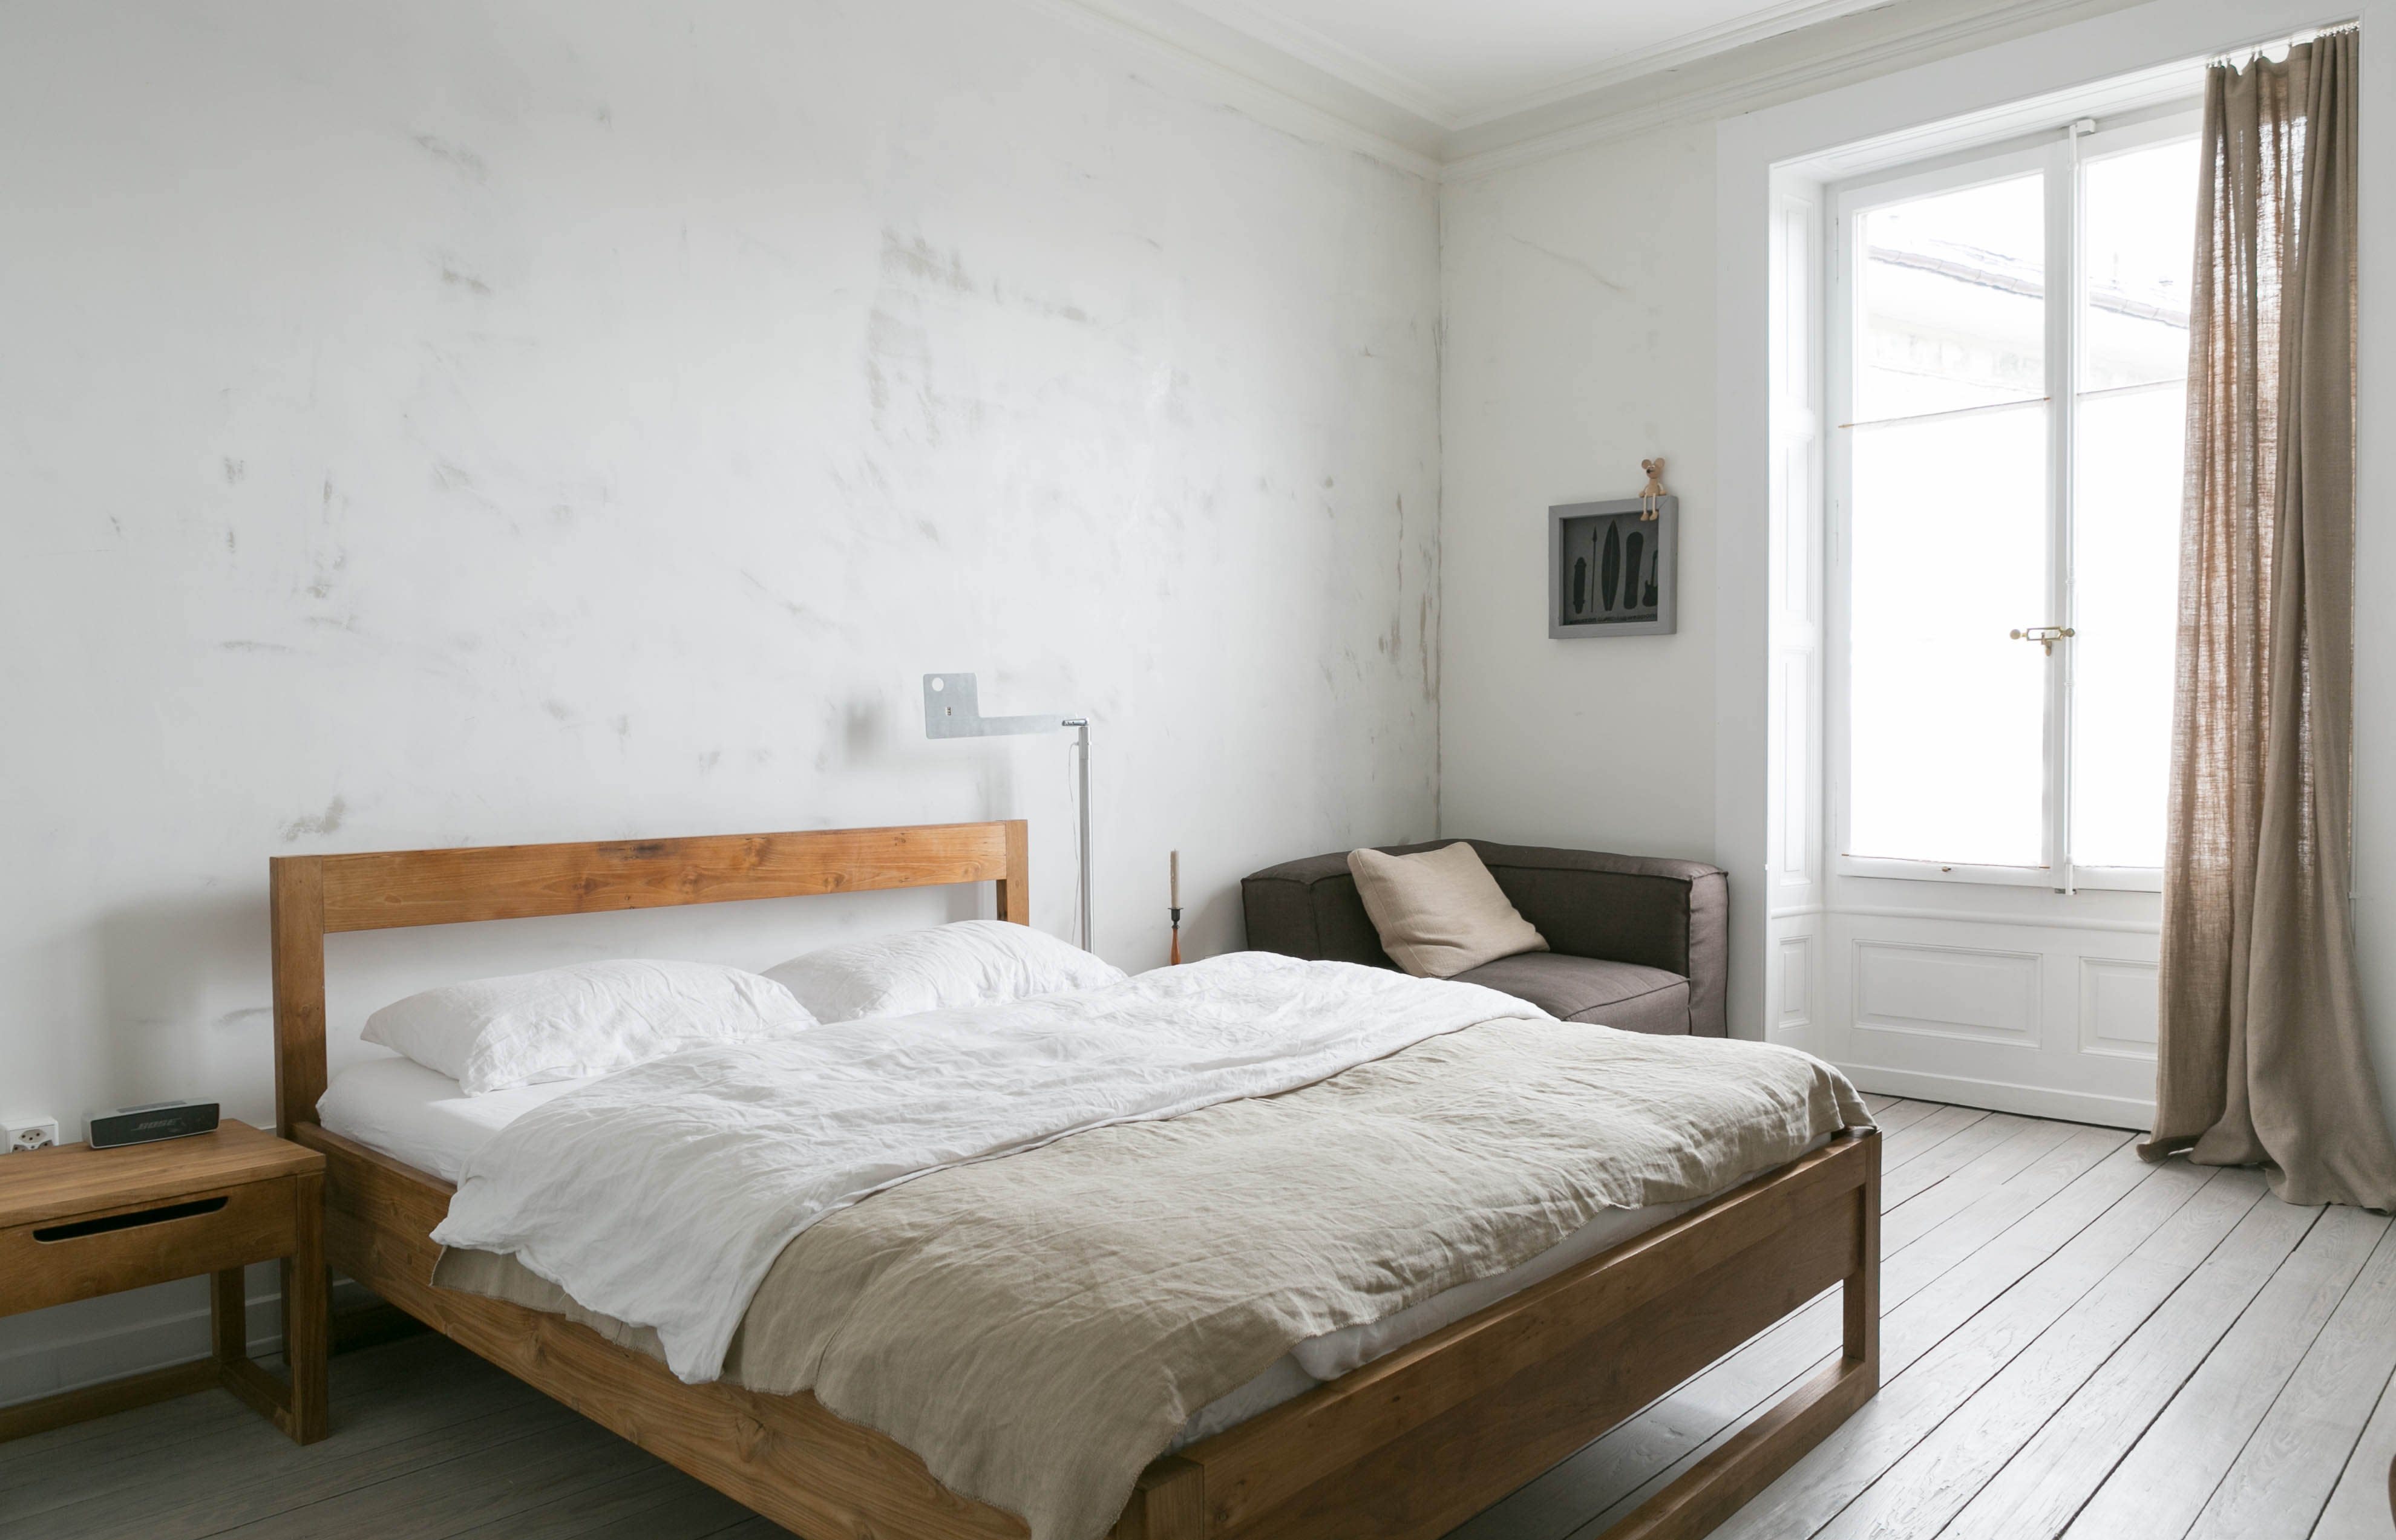  Minimalist  Bedroom  Ideas That Aren t Boring Apartment  